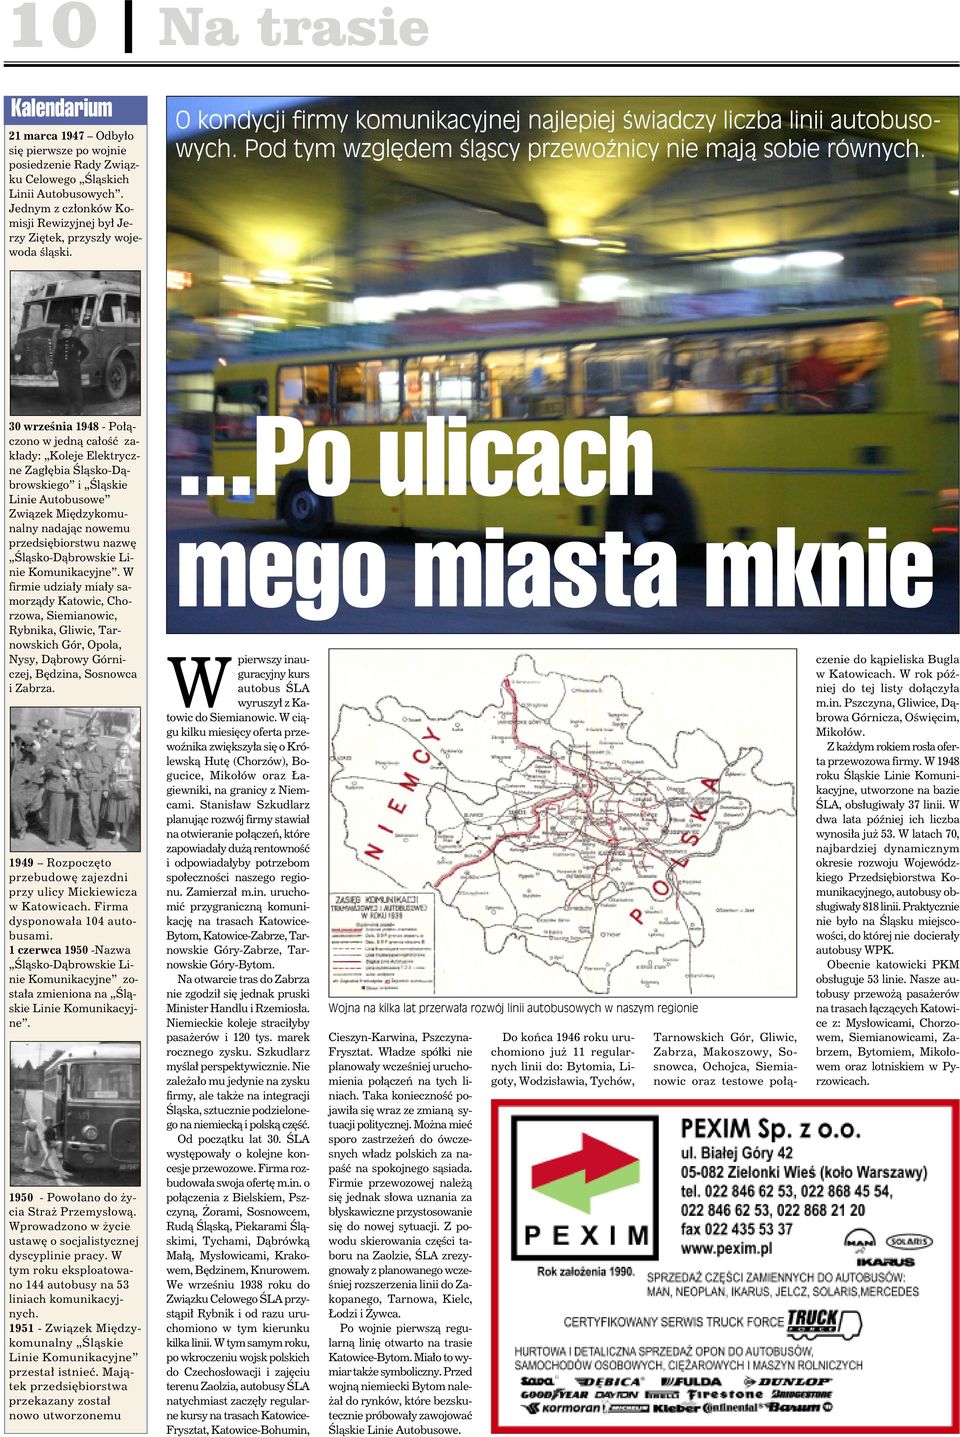 30 września 1948 - Połączono w jedną całość zakłady: Koleje Elektryczne Zagłębia Śląsko-Dąbrowskiego i Śląskie Linie Autobusowe Związek Międzykomunalny nadając nowemu przedsiębiorstwu nazwę